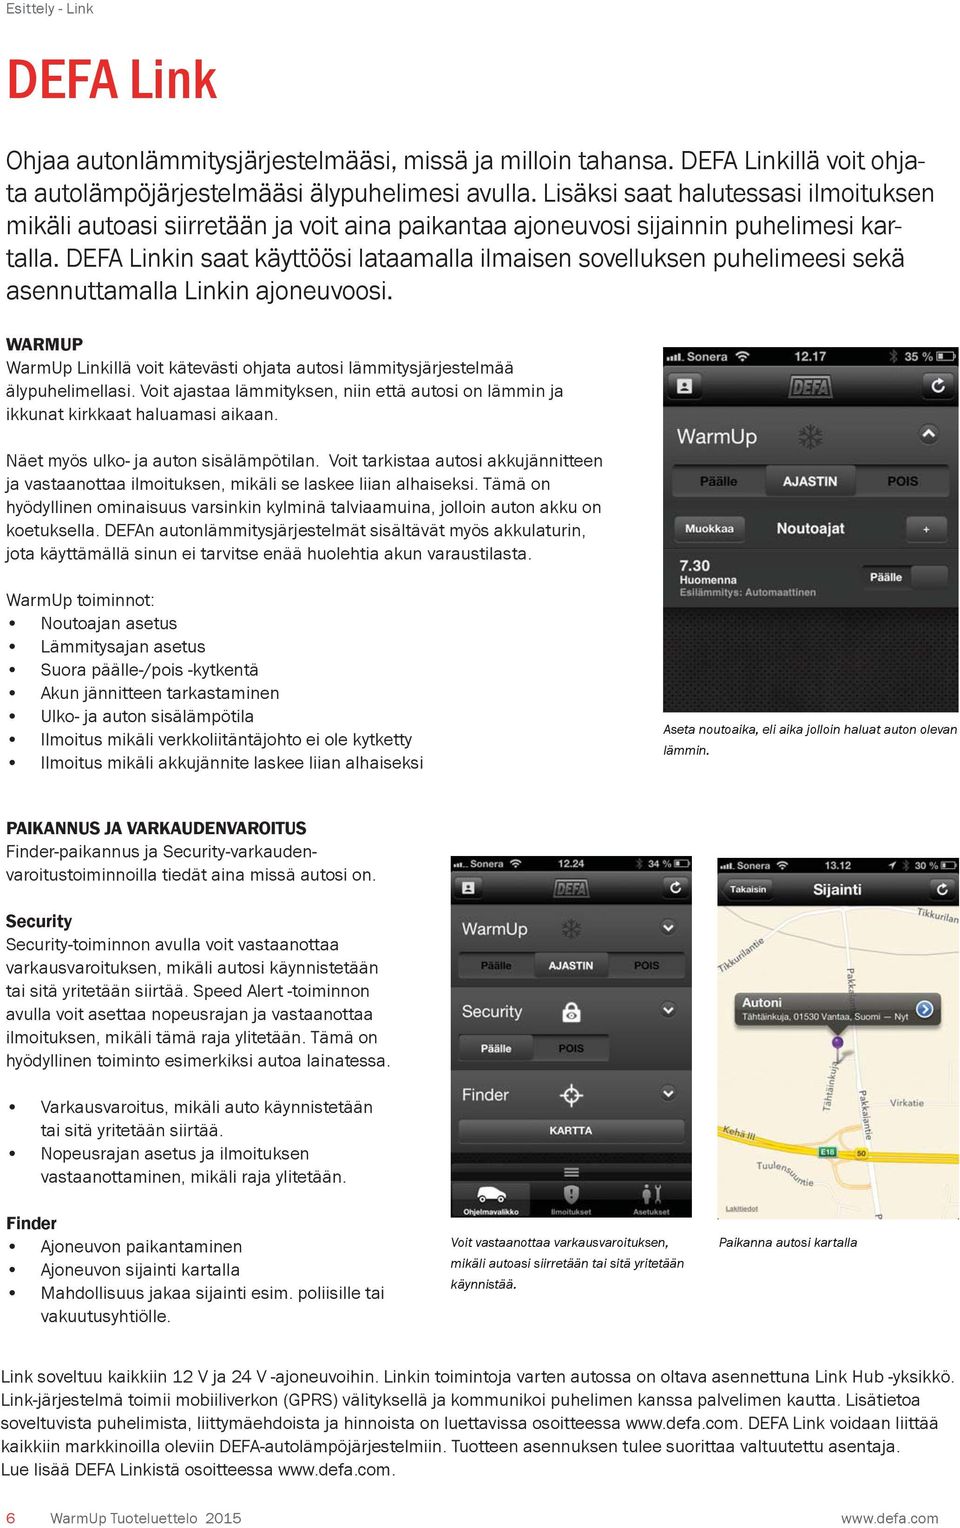 DEFA Linkin saat käyttöösi lataamalla ilmaisen sovelluksen puhelimeesi sekä asennuttamalla Linkin ajoneuvoosi.